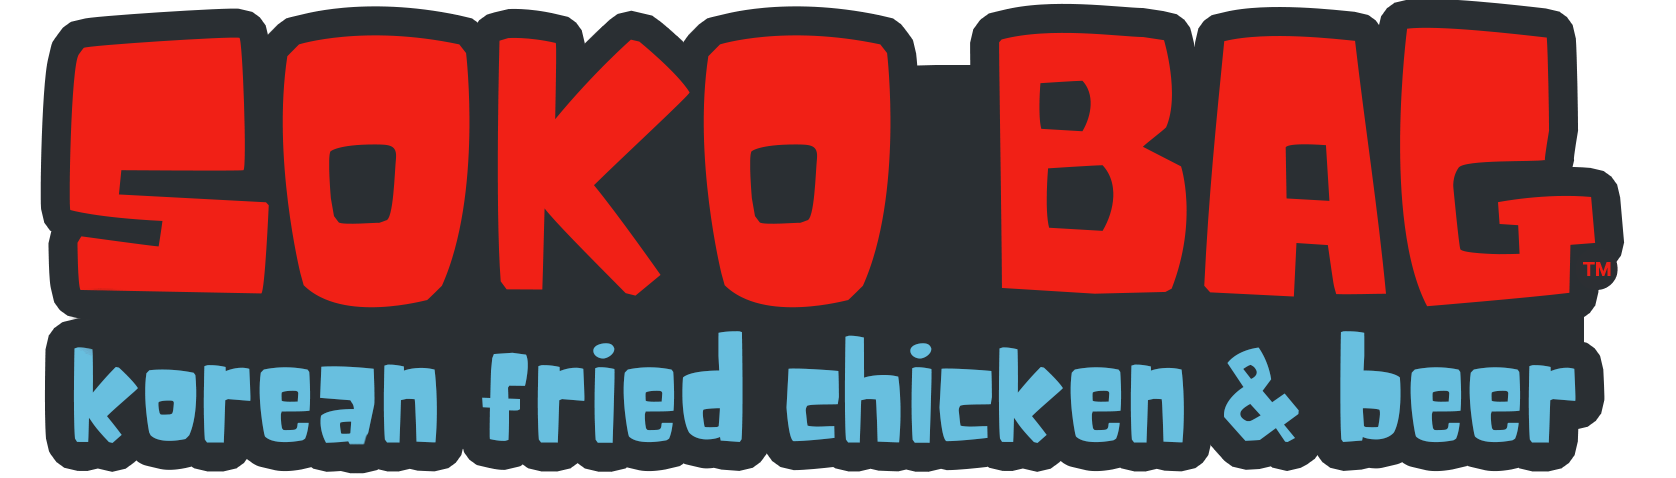 SokoBag New Logo